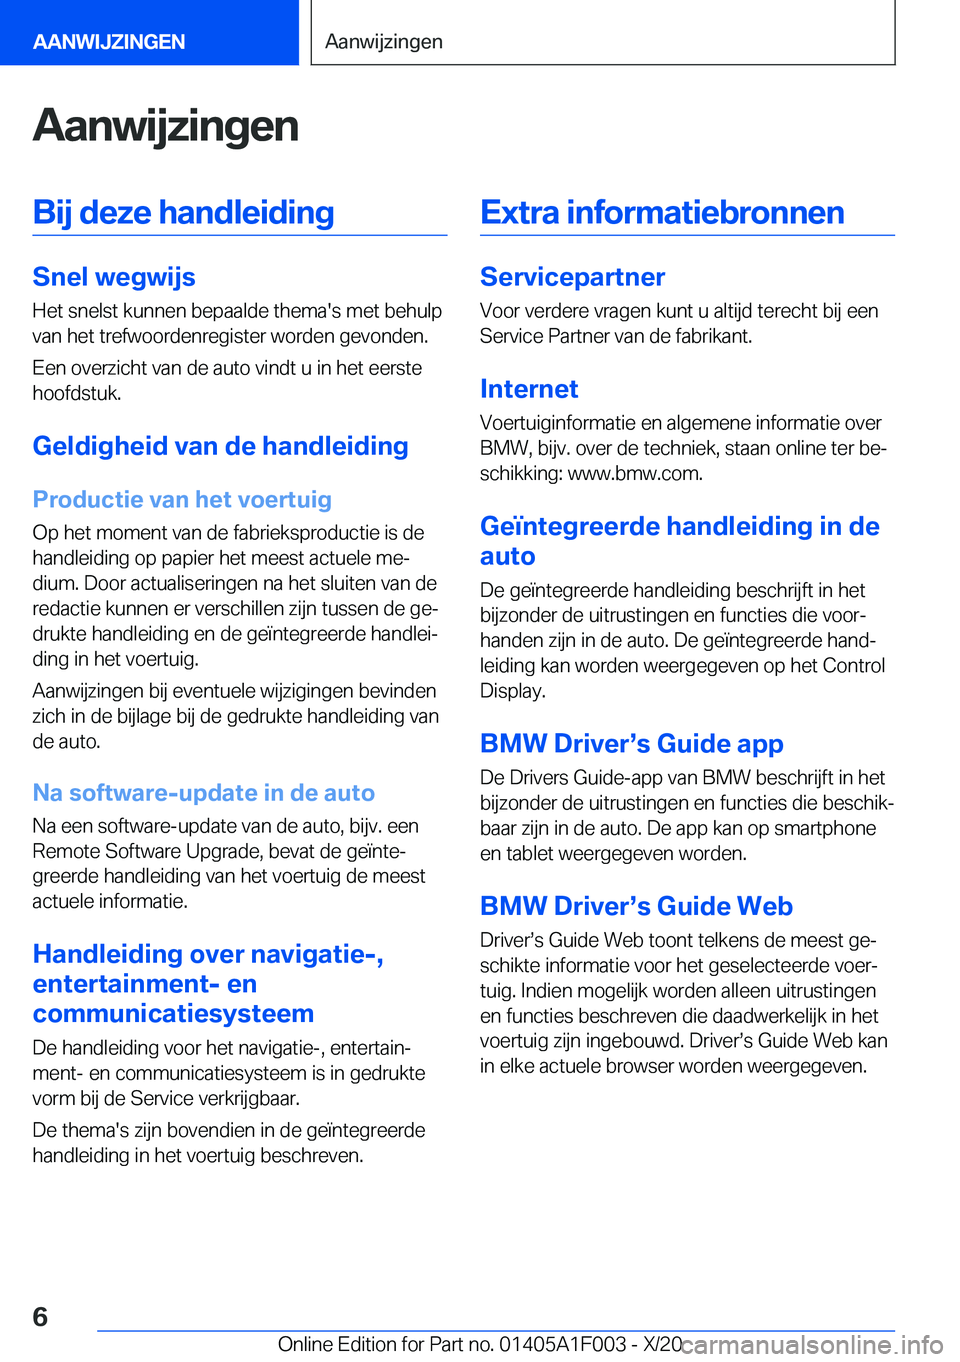 BMW X7 2021  Instructieboekjes (in Dutch) �A�a�n�w�i�j�z�i�n�g�e�n�B�i�j��d�e�z�e��h�a�n�d�l�e�i�d�i�n�g
�S�n�e�l��w�e�g�w�i�j�s
�H�e�t��s�n�e�l�s�t��k�u�n�n�e�n��b�e�p�a�a�l�d�e��t�h�e�m�a�'�s��m�e�t��b�e�h�u�l�p
�v�a�n��h�e�t�